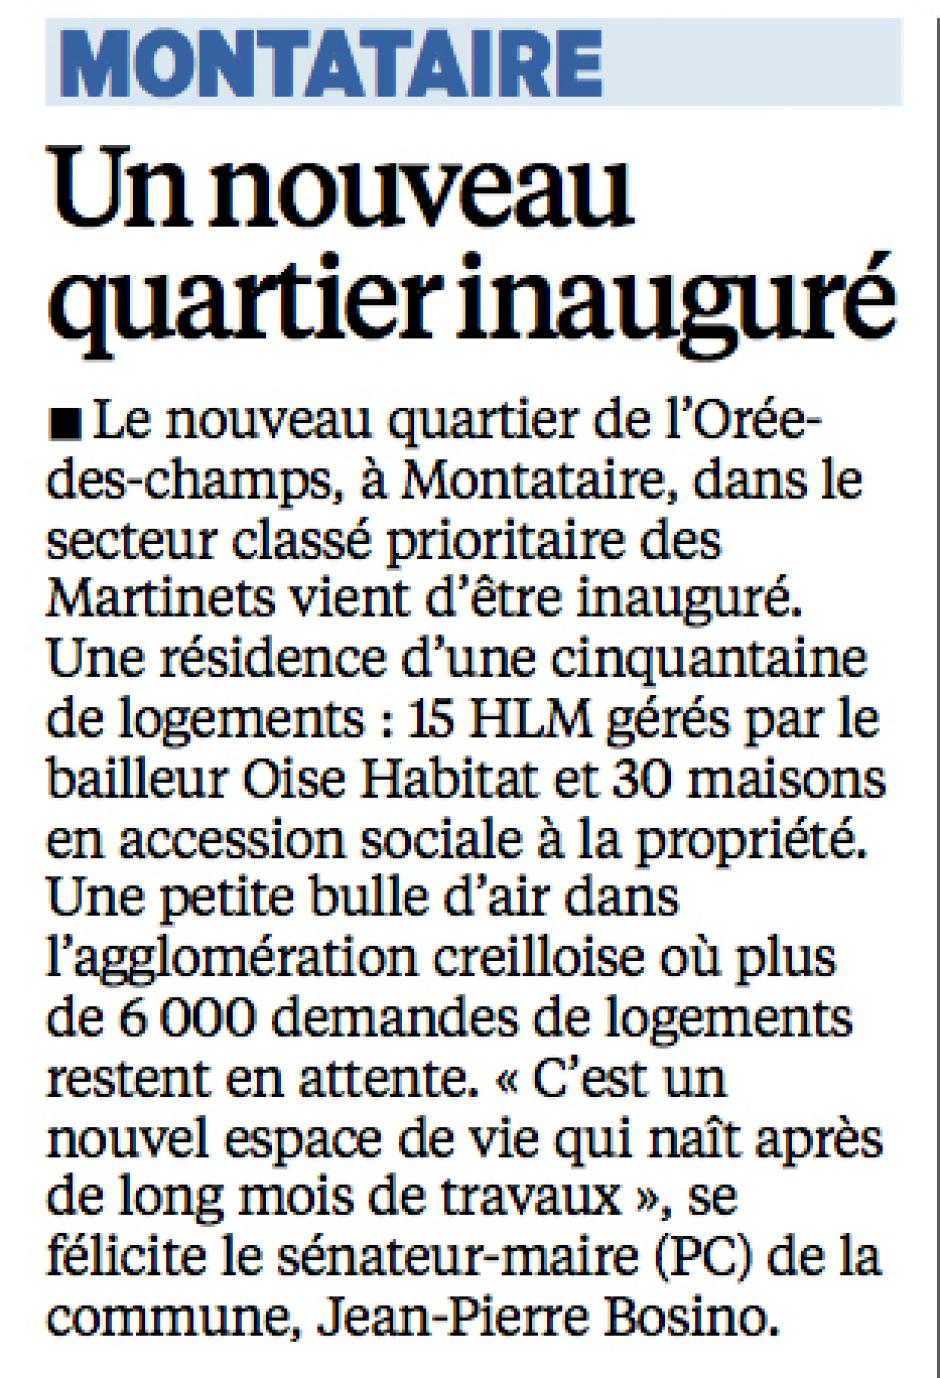 20140422-LeP-Montataire-Un nouveau quartier inauguré